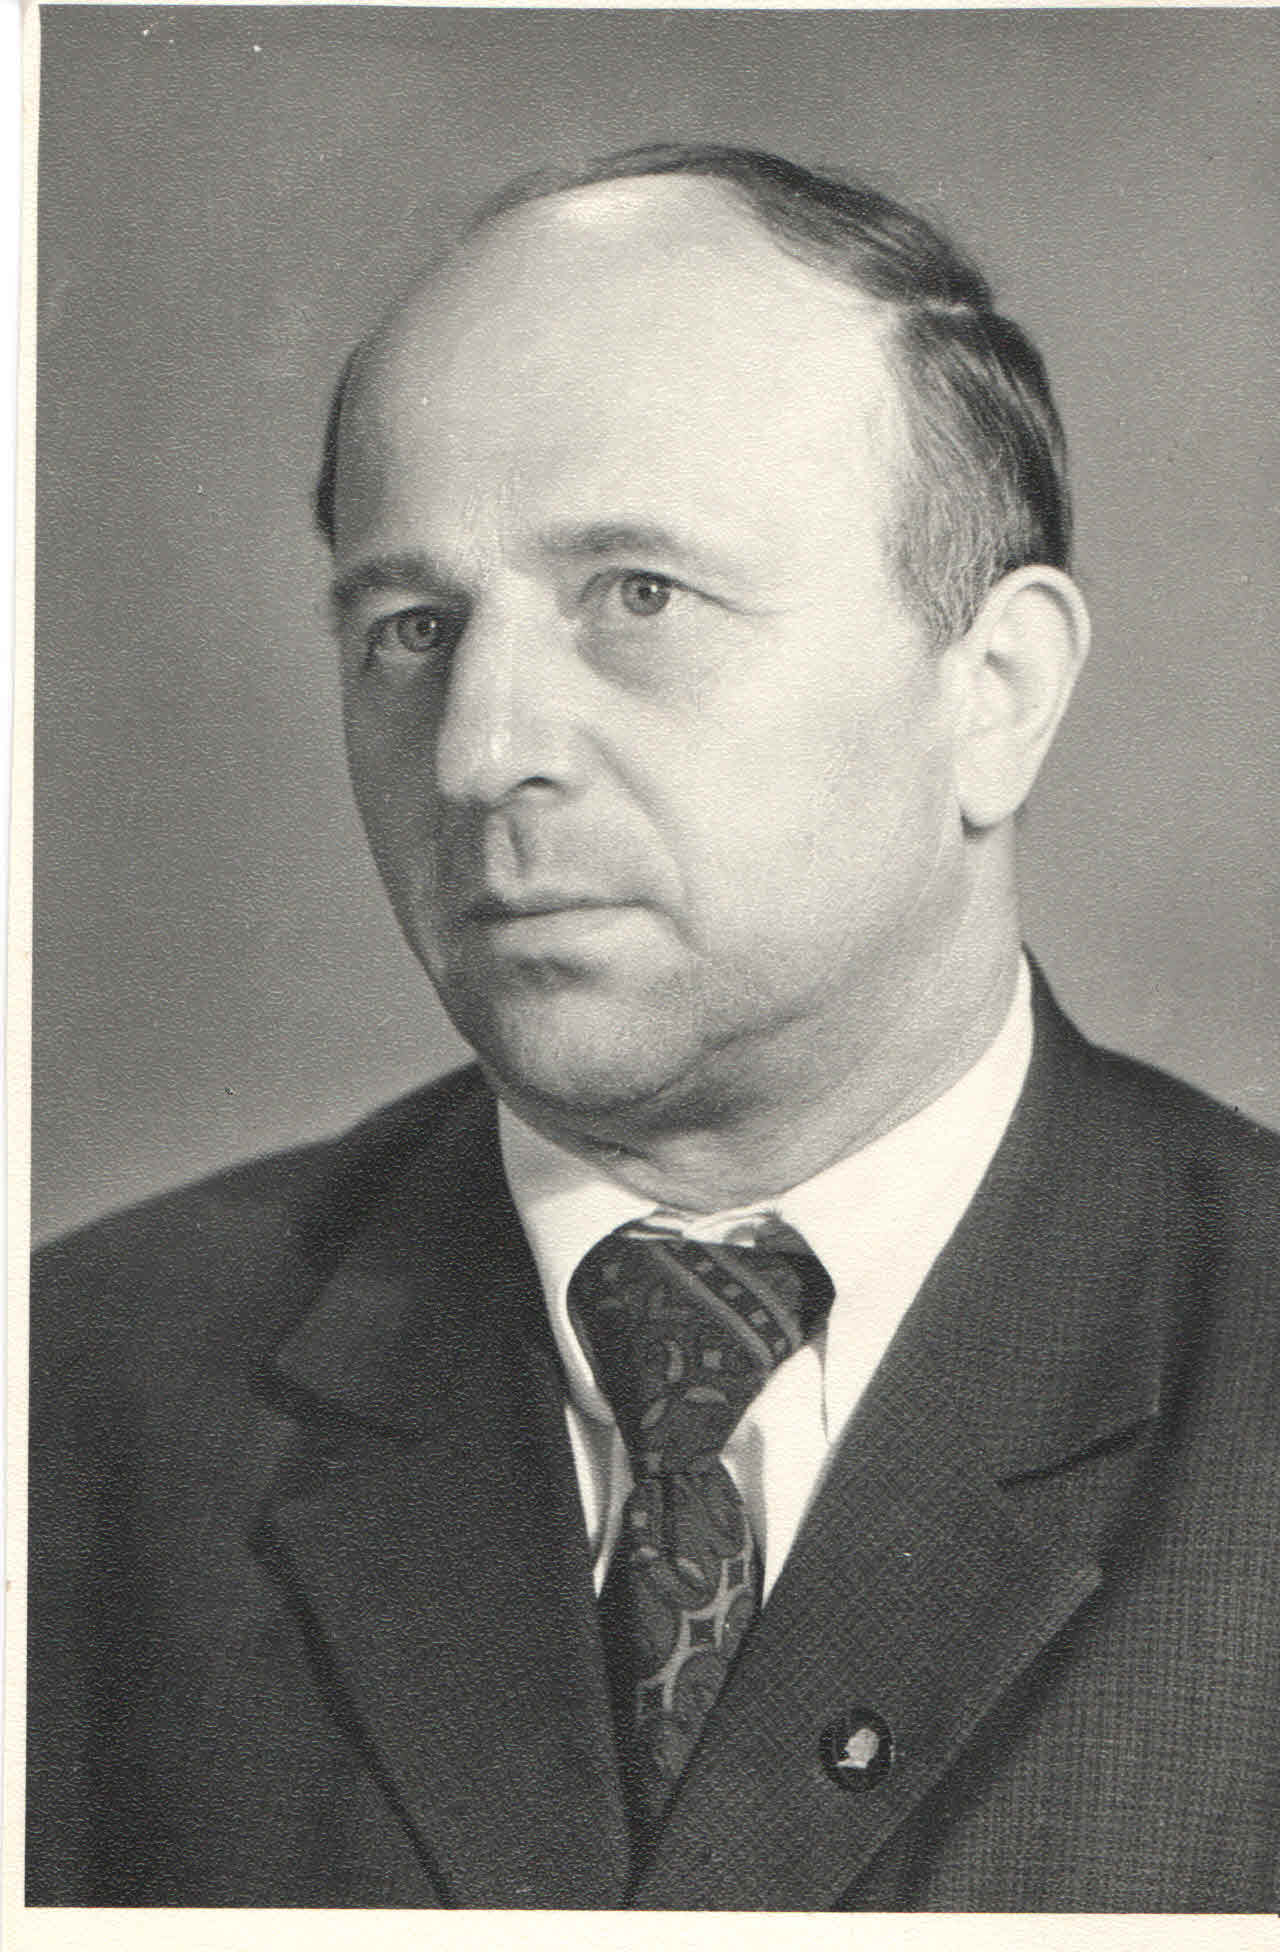 Баранов Василий Иванович. Разведчик в составе отдельного лыжного батальона 362 стрелковой дивизии с декабря 1943 года по апрель 1944.